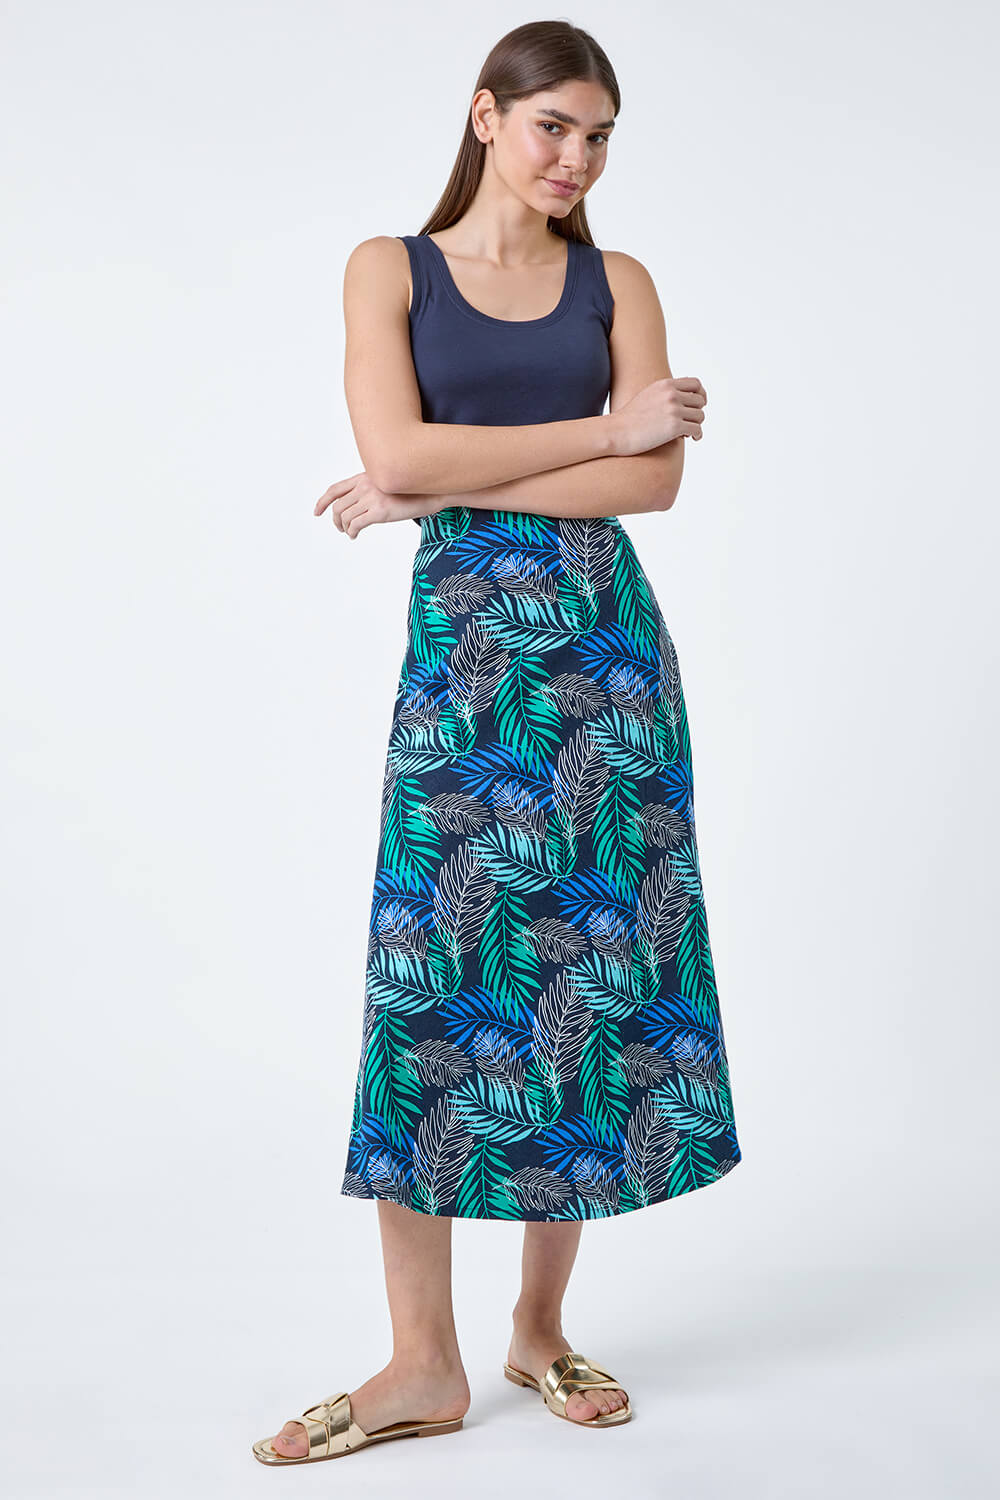 Blue Leaf Print Linen Blend A-Line Skirt, Image 2 of 5